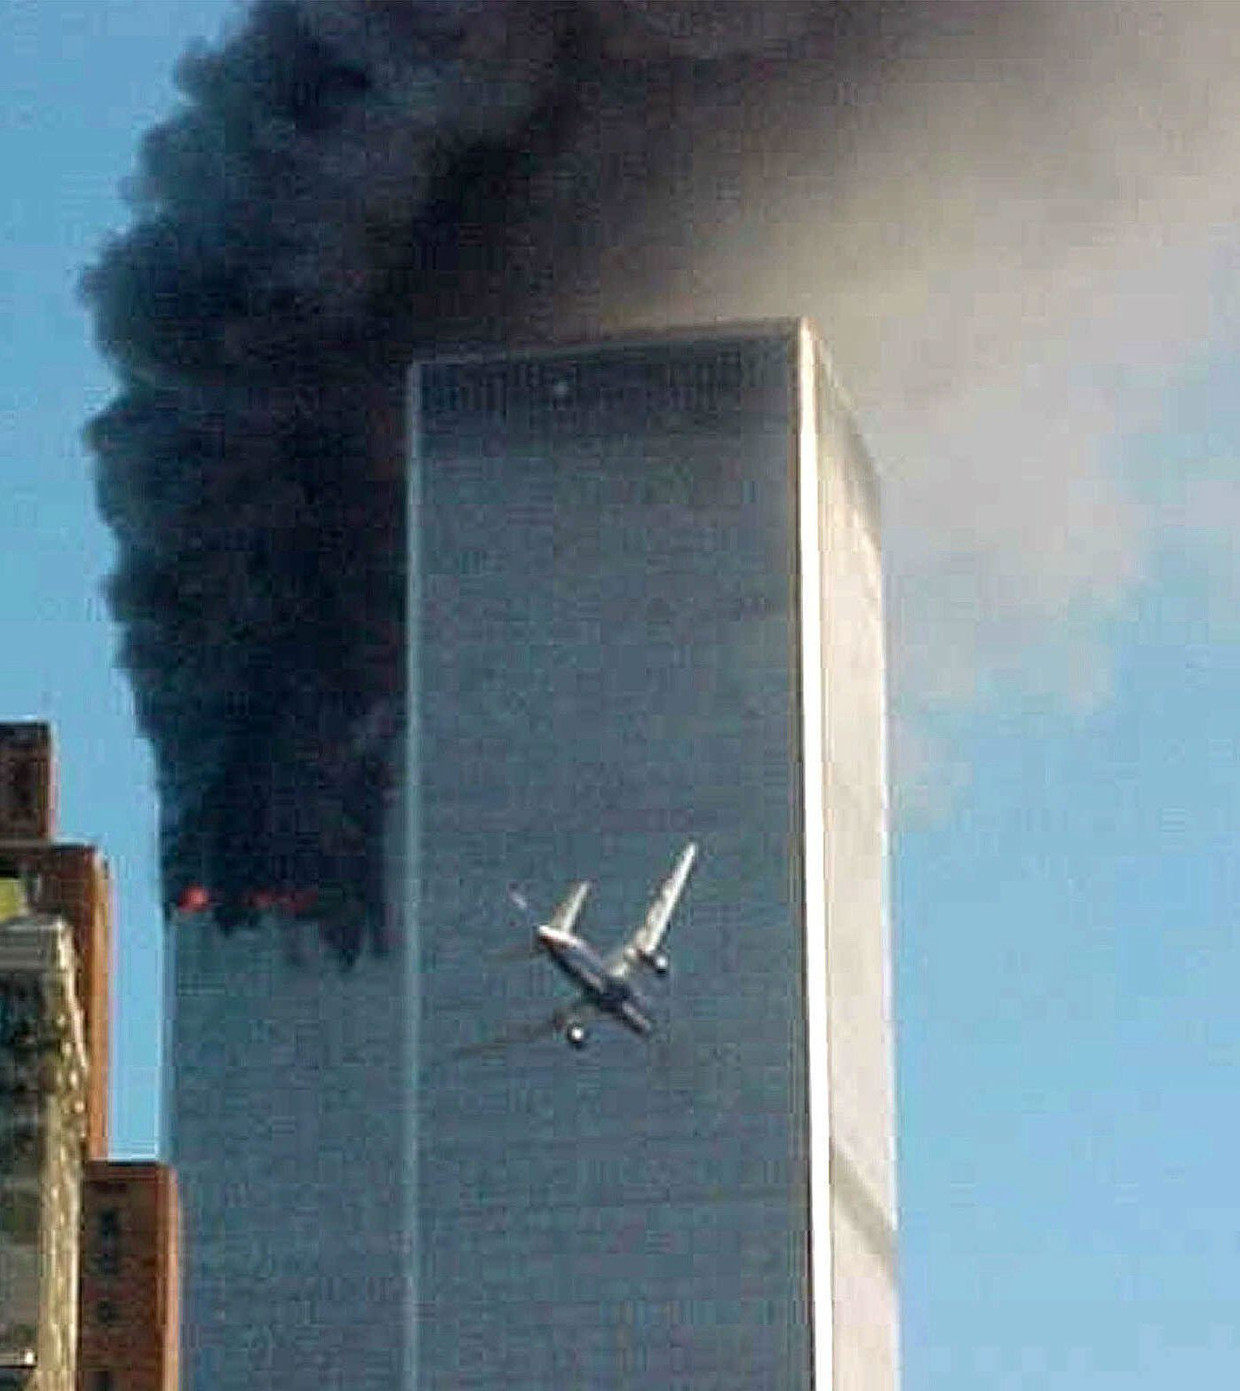 Dit beeld van 9/11, van het tweede vliegtuig dat de Twin Towers in New York binnenvliegt, is mogelijk ’s werelds bekendste historische foto. De maker is geen fotograaf, maar een verpleegkundige uit Arkansas, Carmen Taylor, die op bezoek was in de stad. Die ochtend stond ze net op een veerpont naar het Vrijheidsbeeld. Ze stuurde haar foto op advies van een omstander naar een lokale nieuwszender die hem verder verspreidde.  Beeld AP